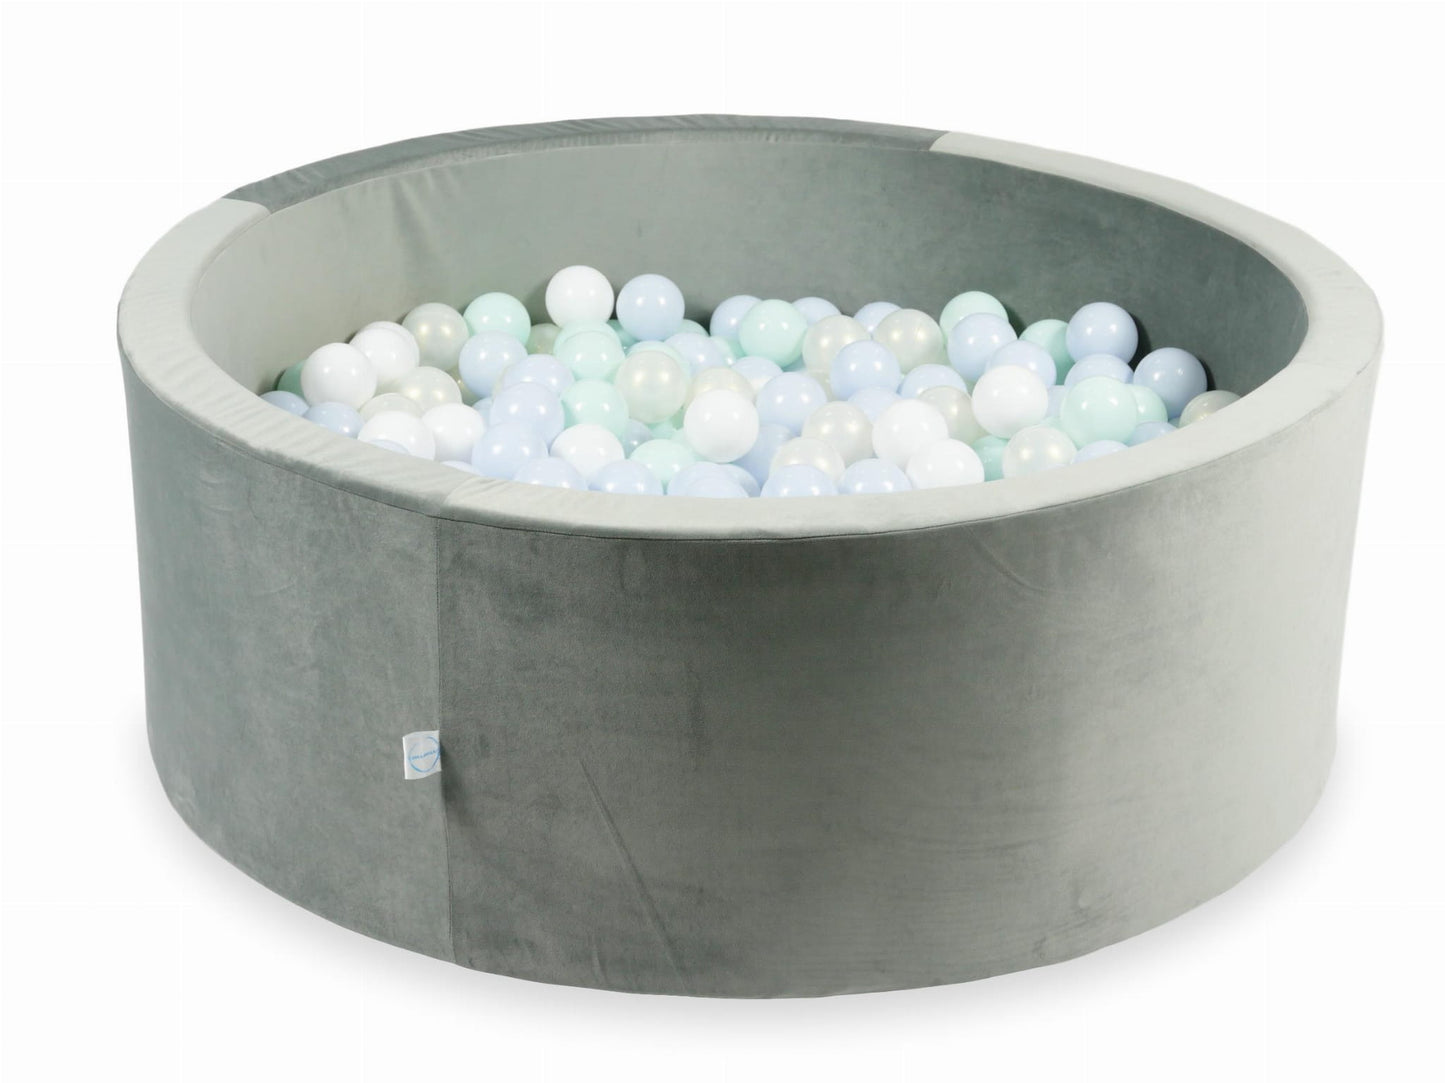 Piscine à Balles 110x40 Velvet gris avec balles 500 pcs (bleu perle claire, menthe clair, iridescent, blanc)